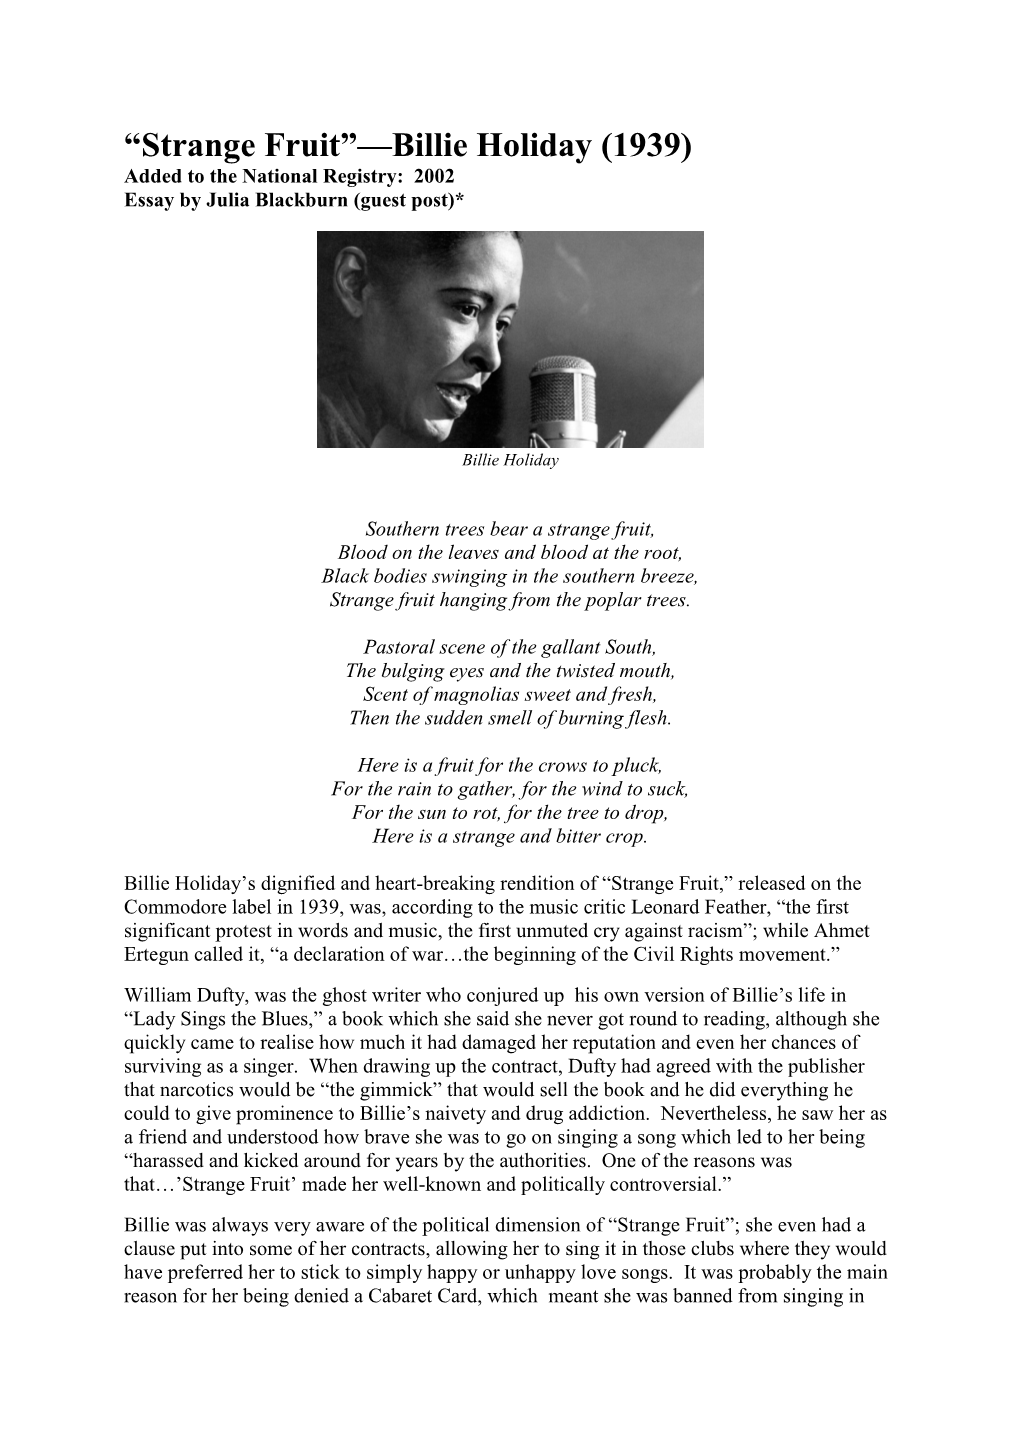 Strange Fruit”—Billie Holiday (1939) Added to the National Registry: 2002 Essay by Julia Blackburn (Guest Post)*